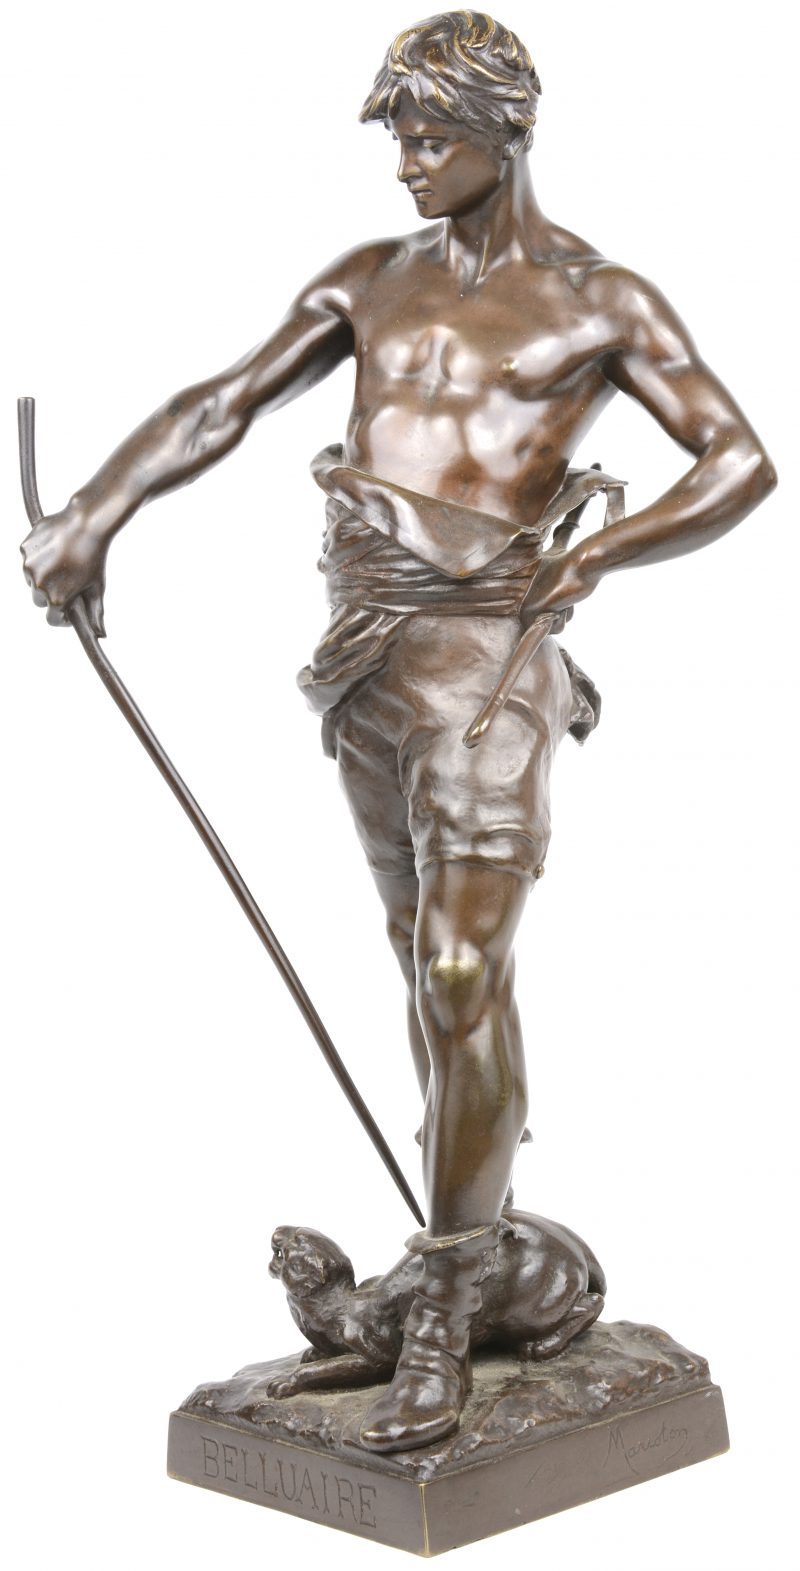 “Belluaire”. Een bronzen beeld. Gesigneerd.